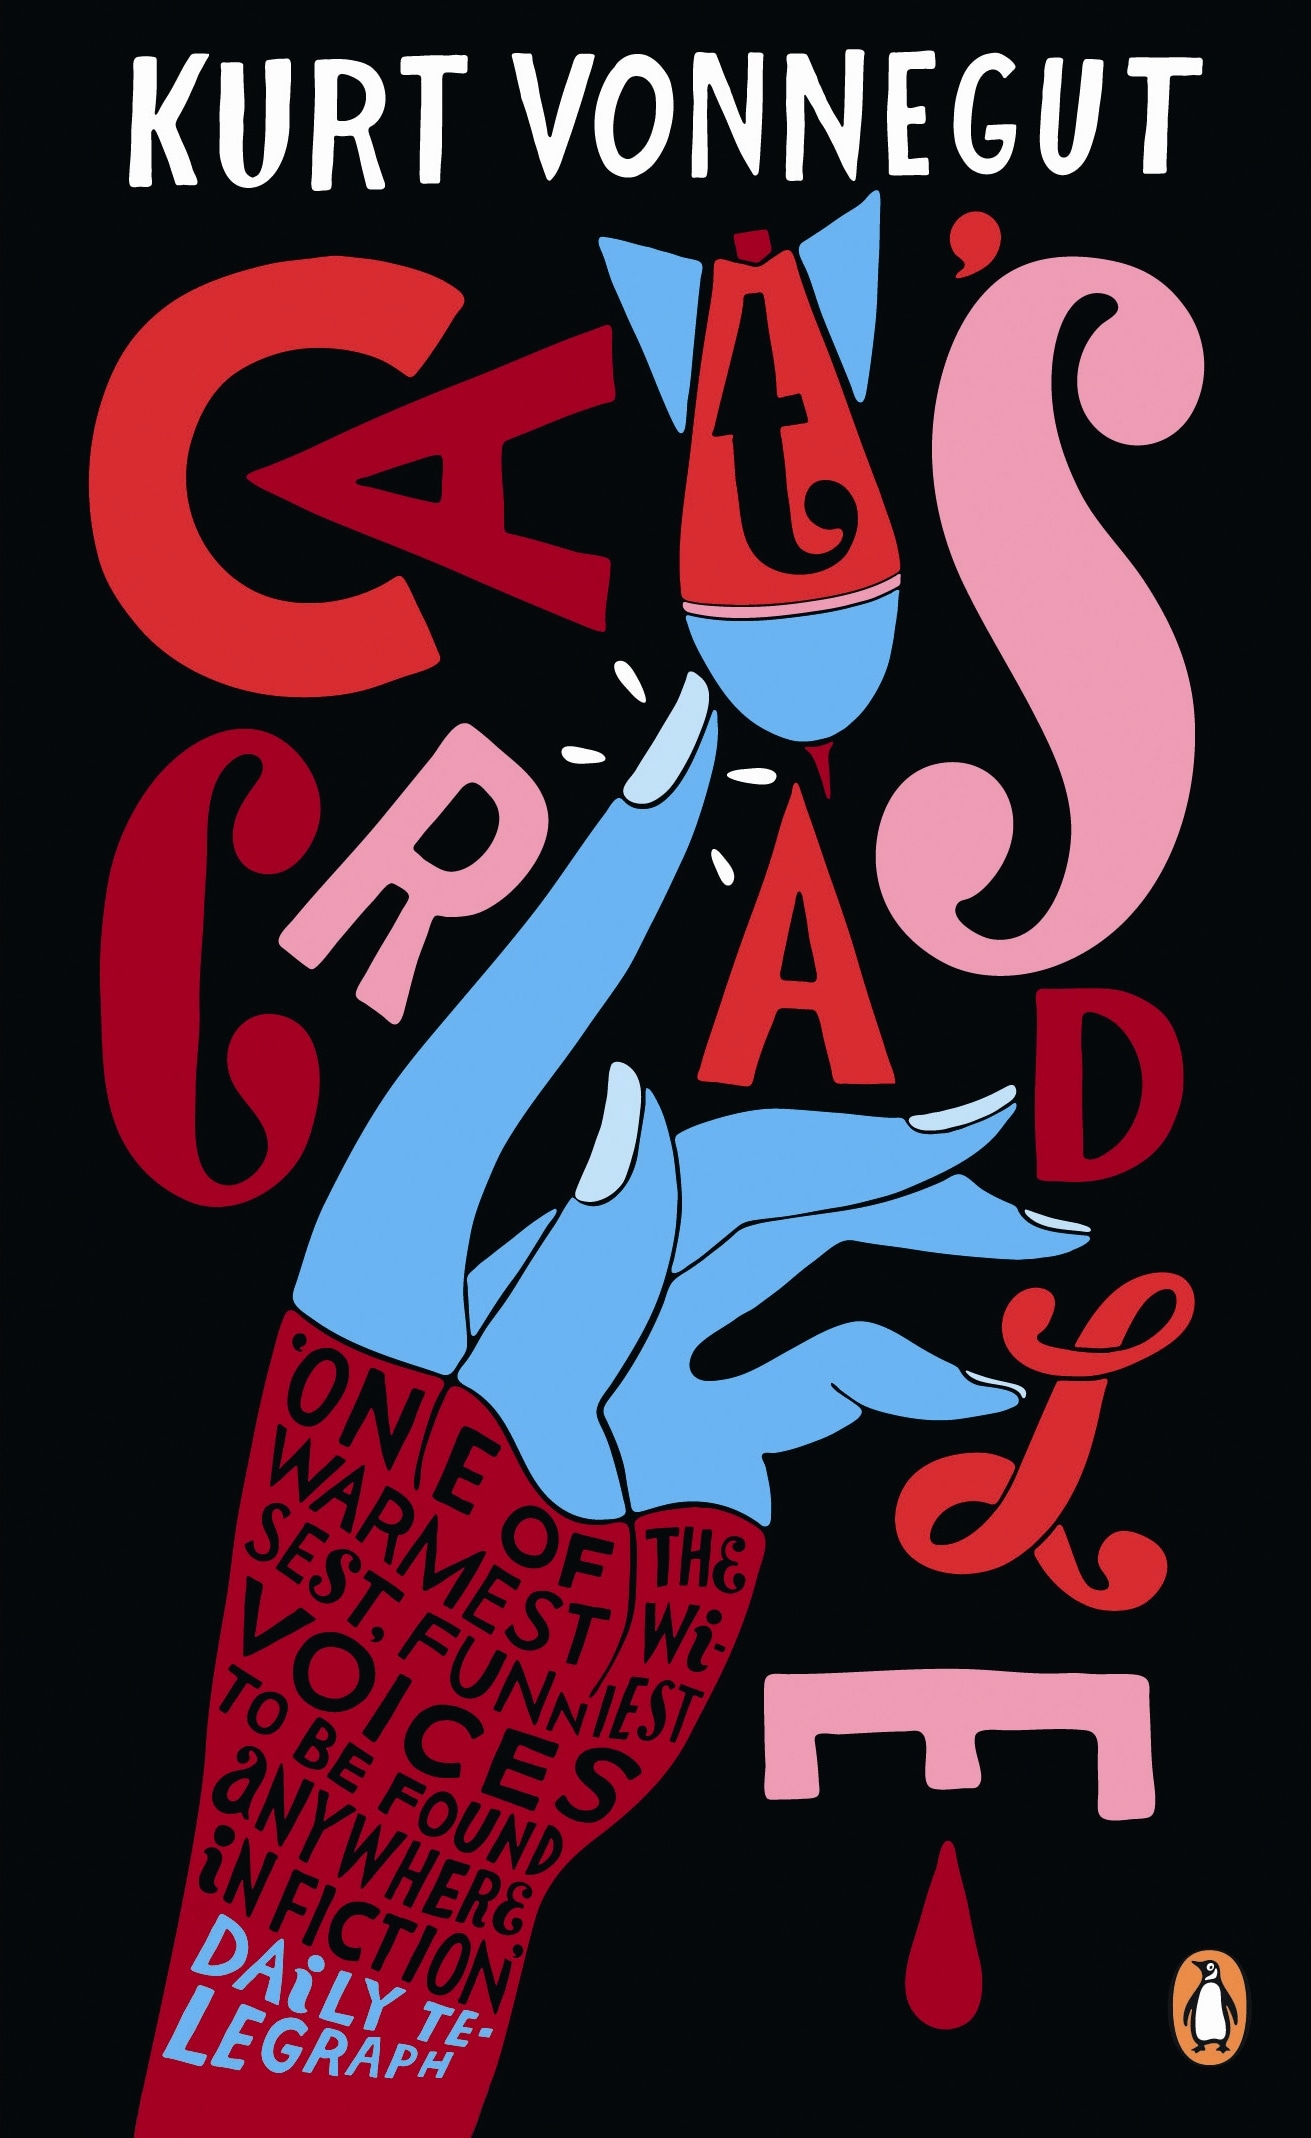 Book “Cat's Cradle” by Kurt Vonnegut, Benjamin Kunkel — April 7, 2011